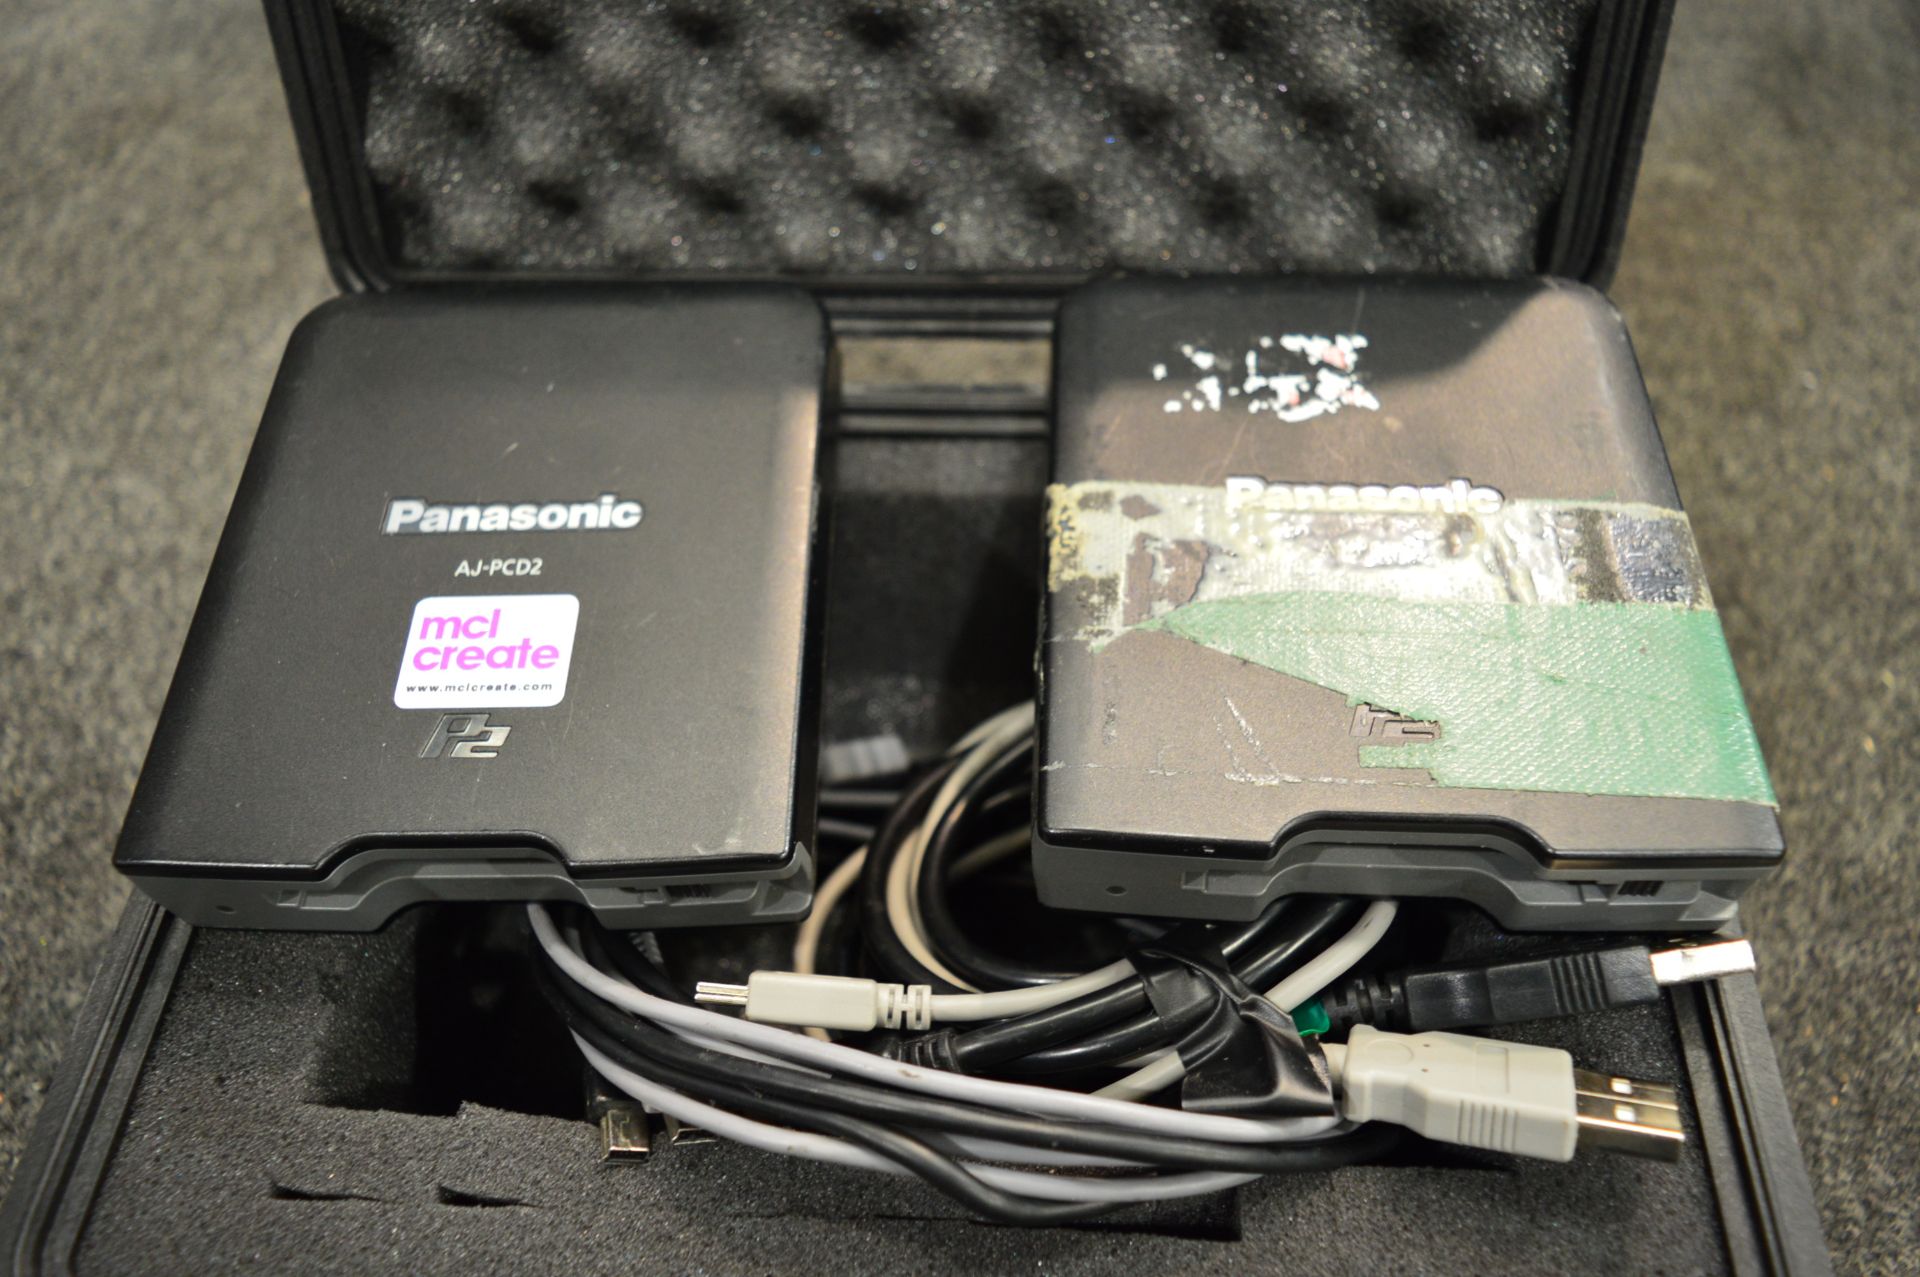 2x No. Panasonic, AJ-PCD2G P2 card readers, DOM 20